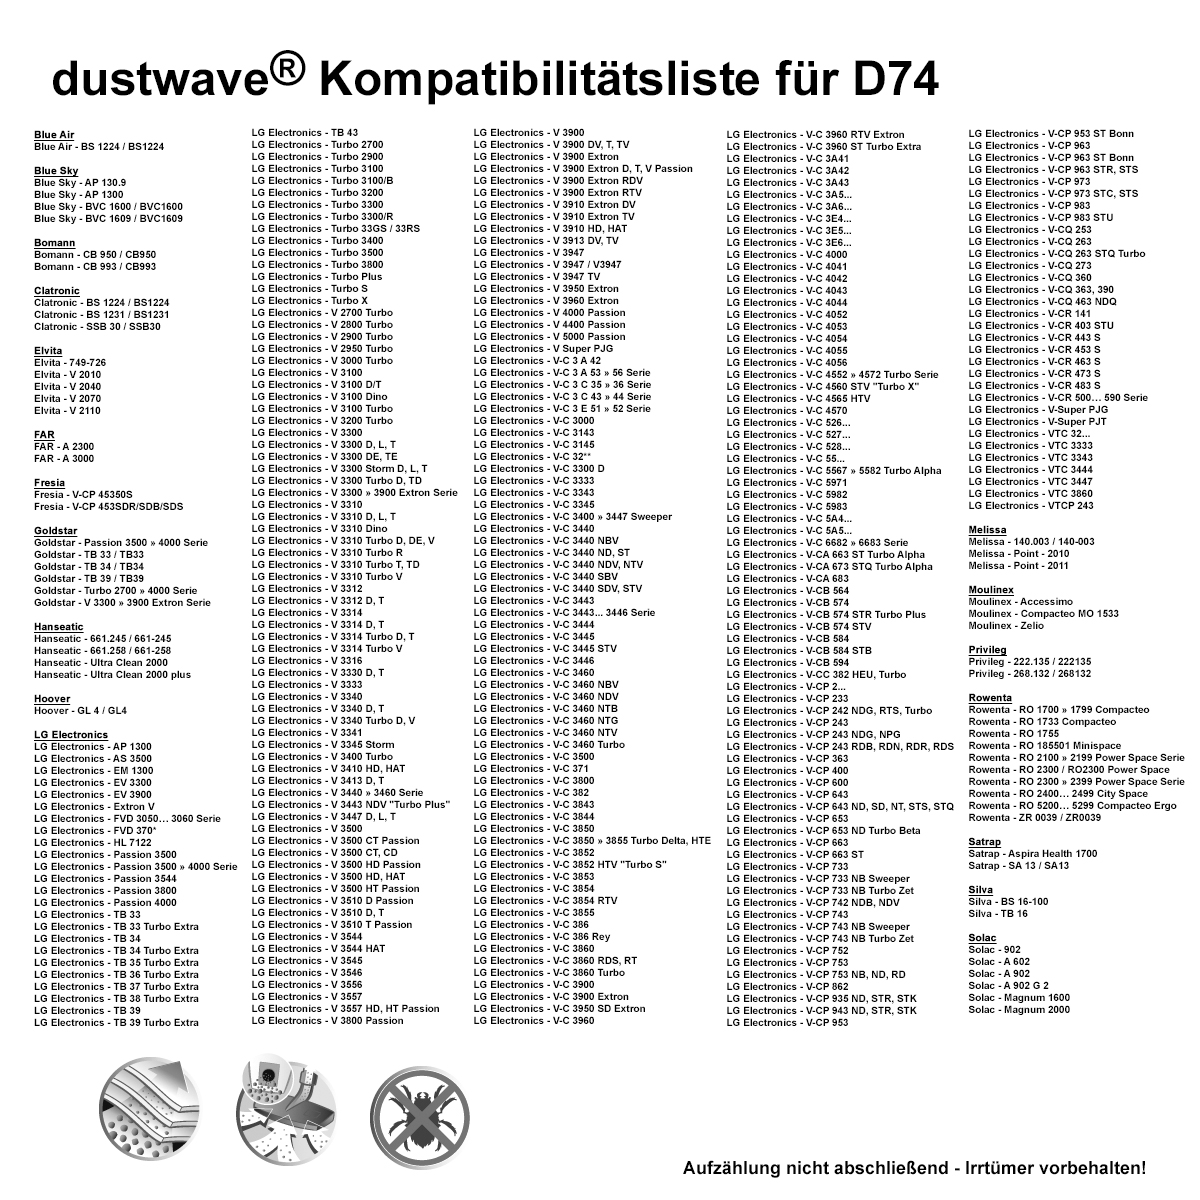 Dustwave® 10 Staubsaugerbeutel für Blue Sky AP 1300 - hocheffizient, mehrlagiges Mikrovlies mit Hygieneverschluss - Made in Germany